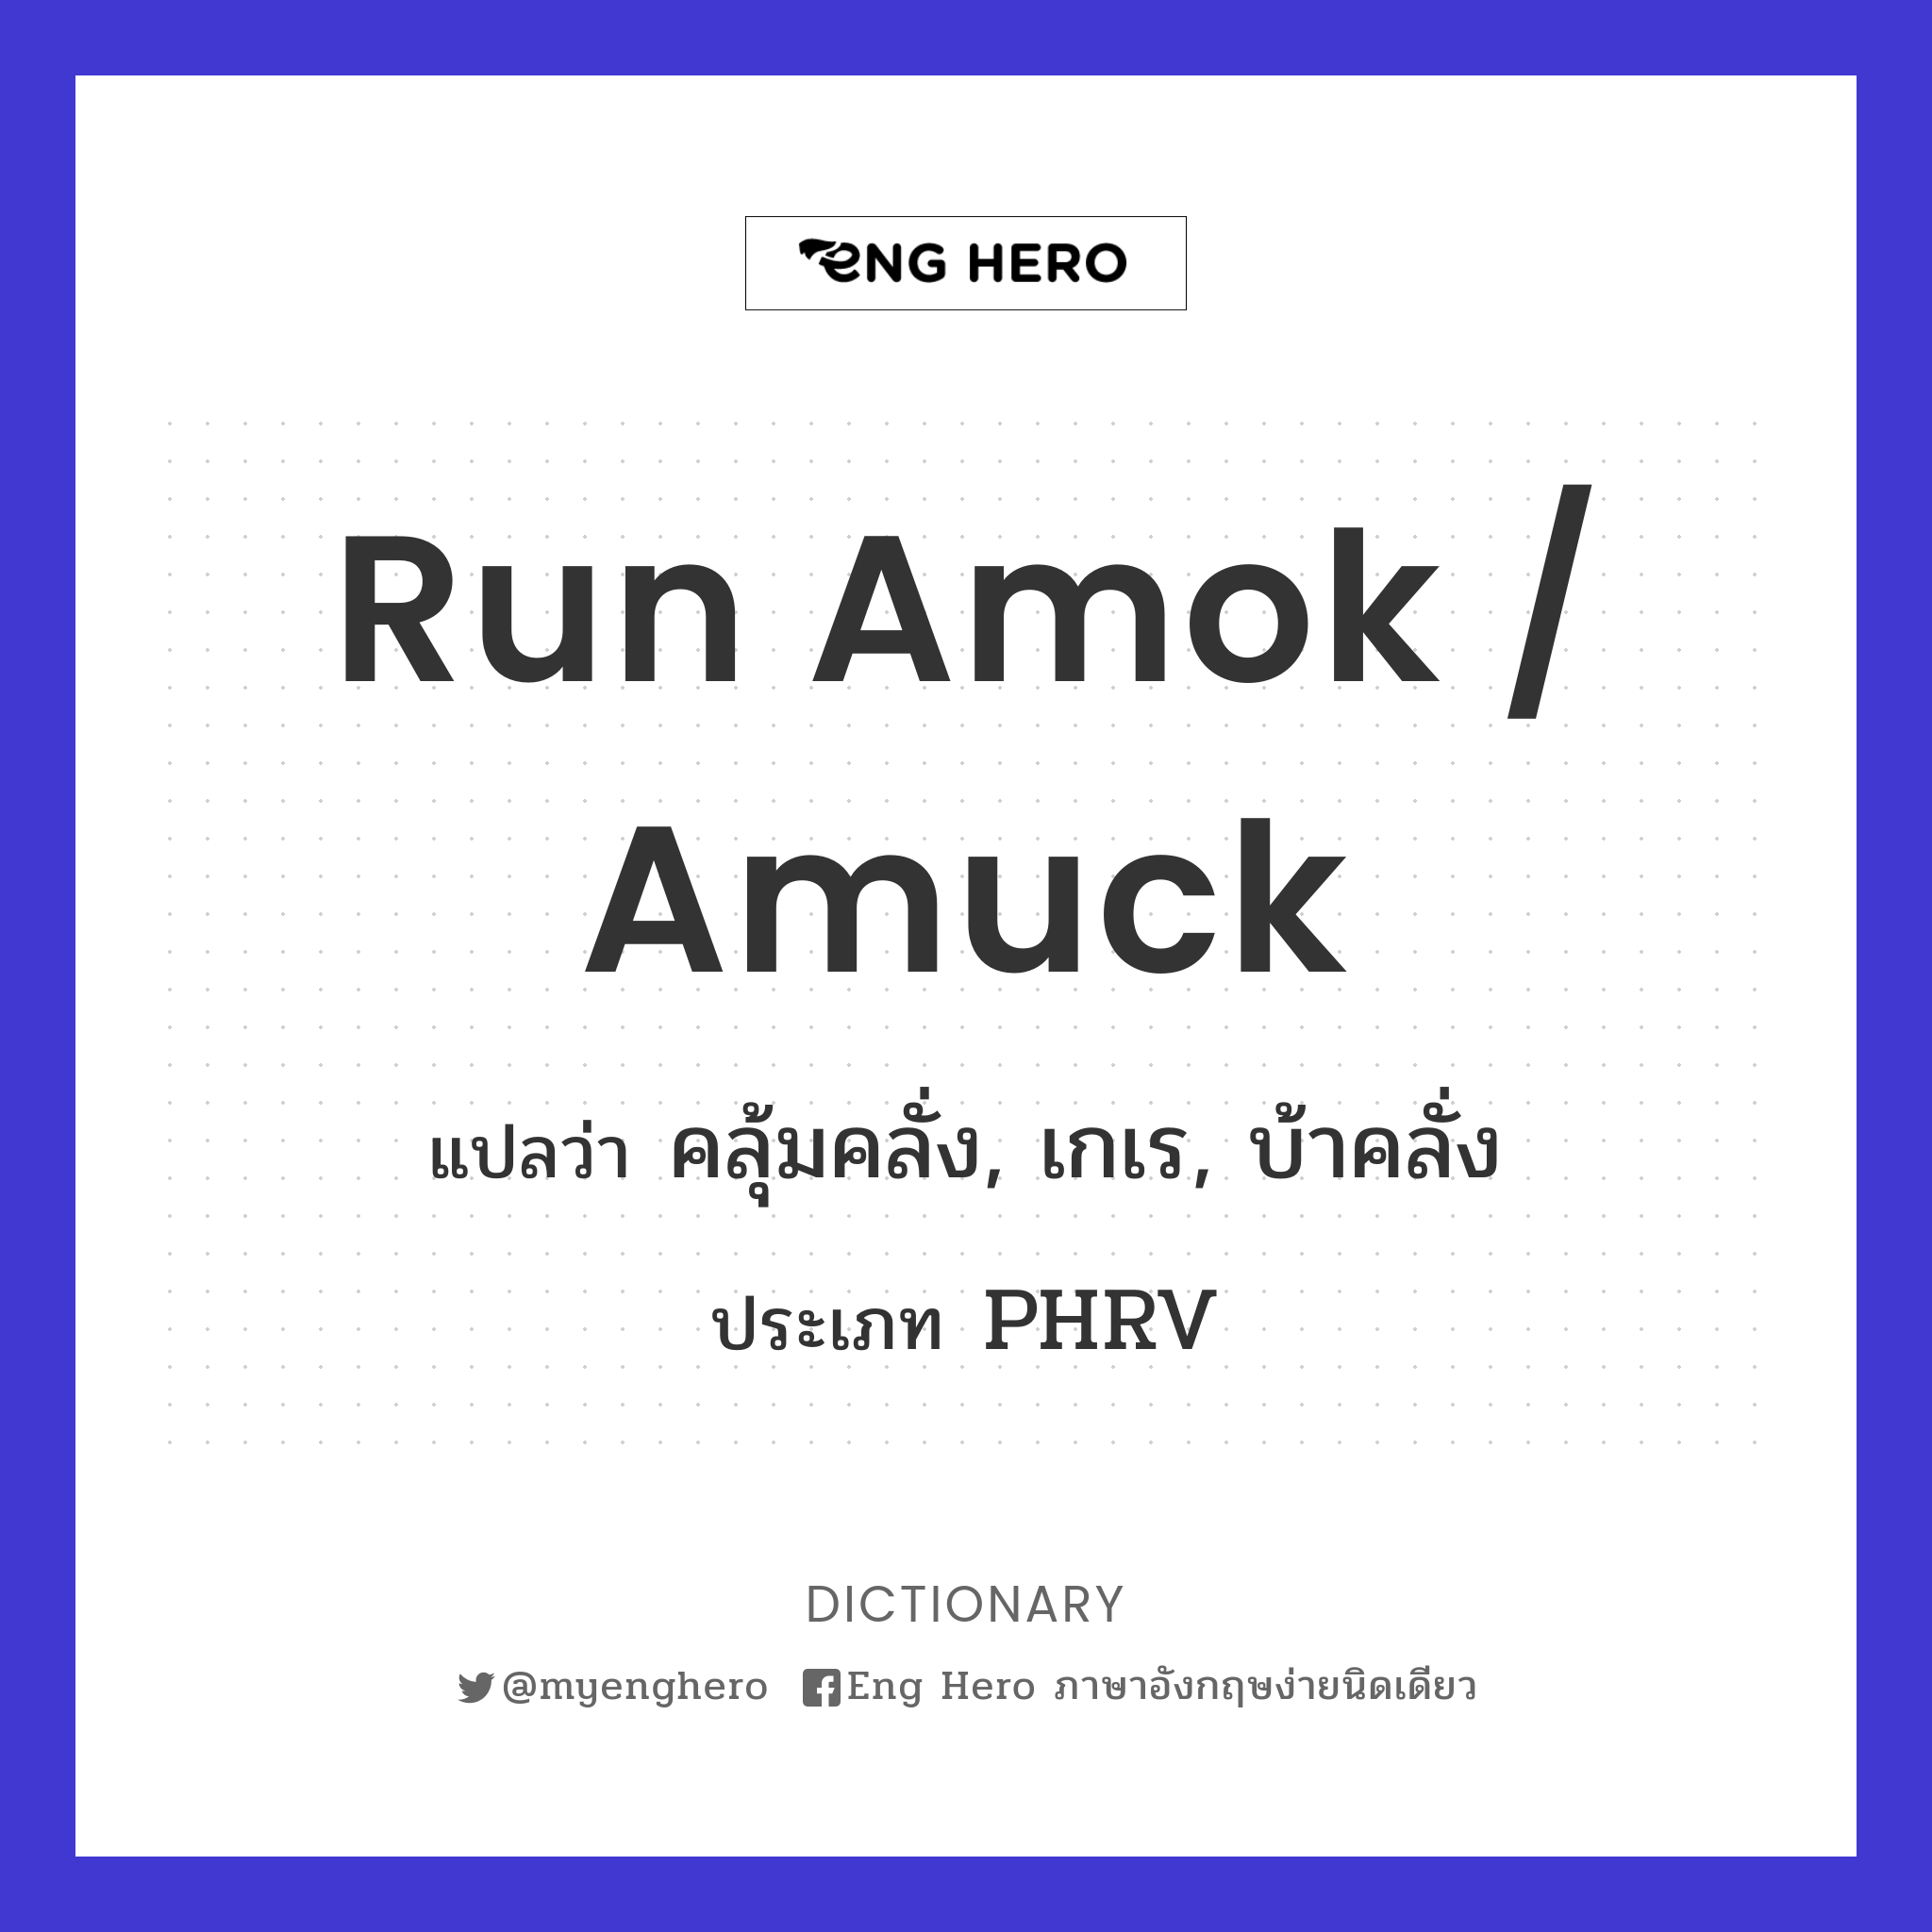 run amok / amuck